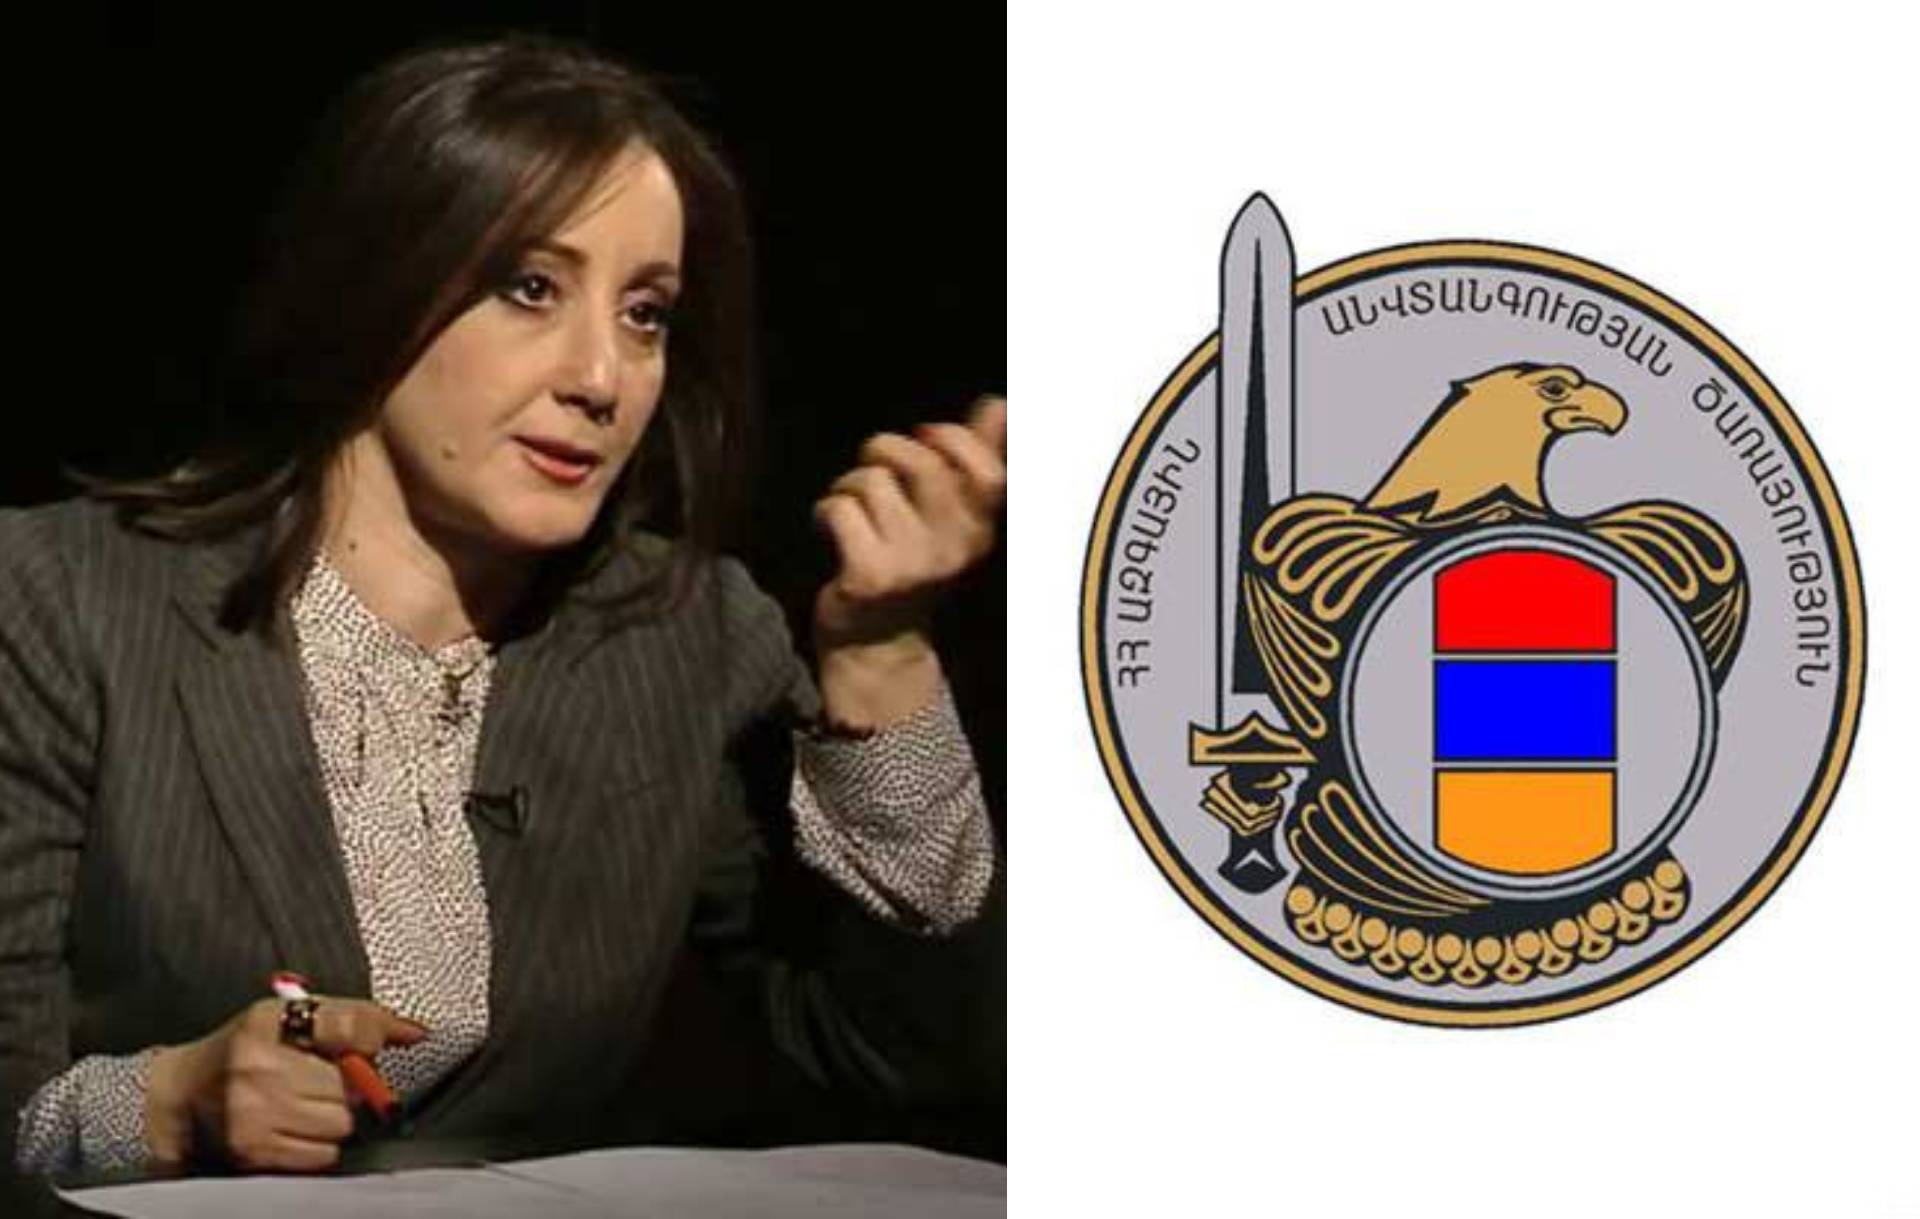 ՀՀ ԱԱԾ-ն որևէ առնչություն չունի Անժելա Թովմասյանի հետ կապված միջադեպի հետ. հայտարարություն